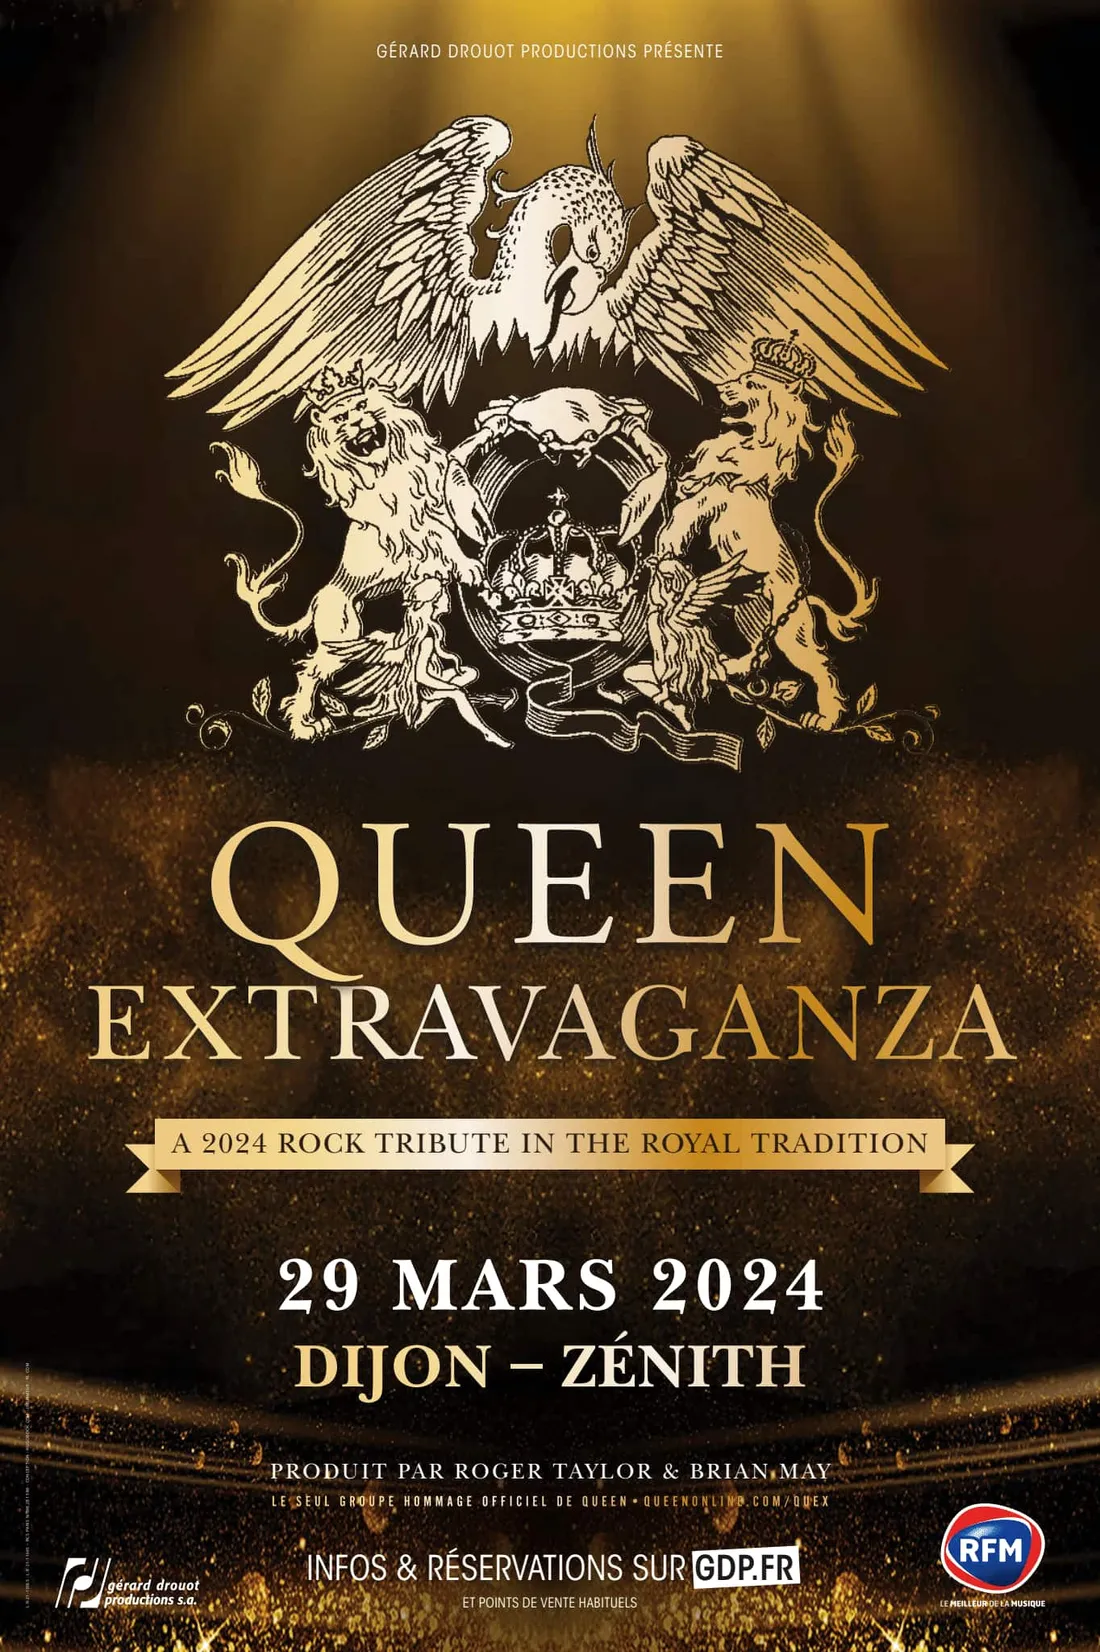 Queen Extravaganza vous donne rendez-vous le 29 mars 2024 au Zénith de Dijon